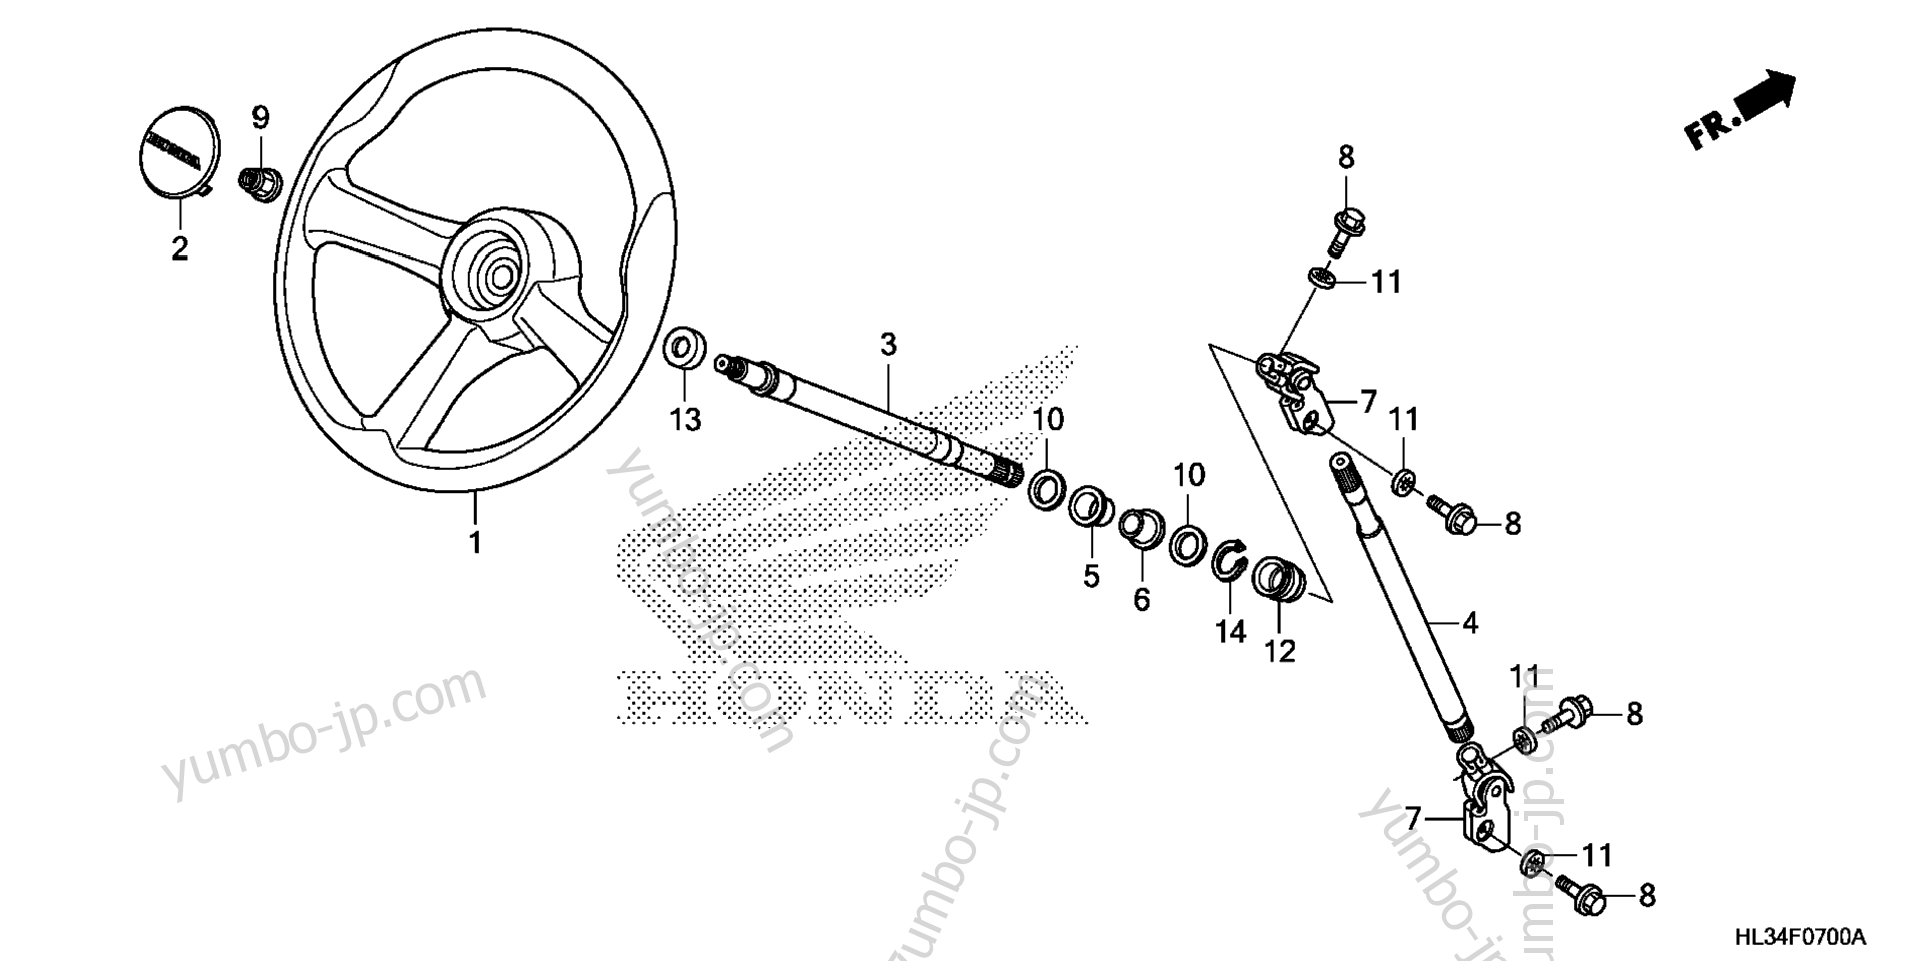 STEERING WHEEL / STEERING SHAFT для мотовездеходов HONDA Pioneer 700-4 (SXS700M4 AC) 2014 г.